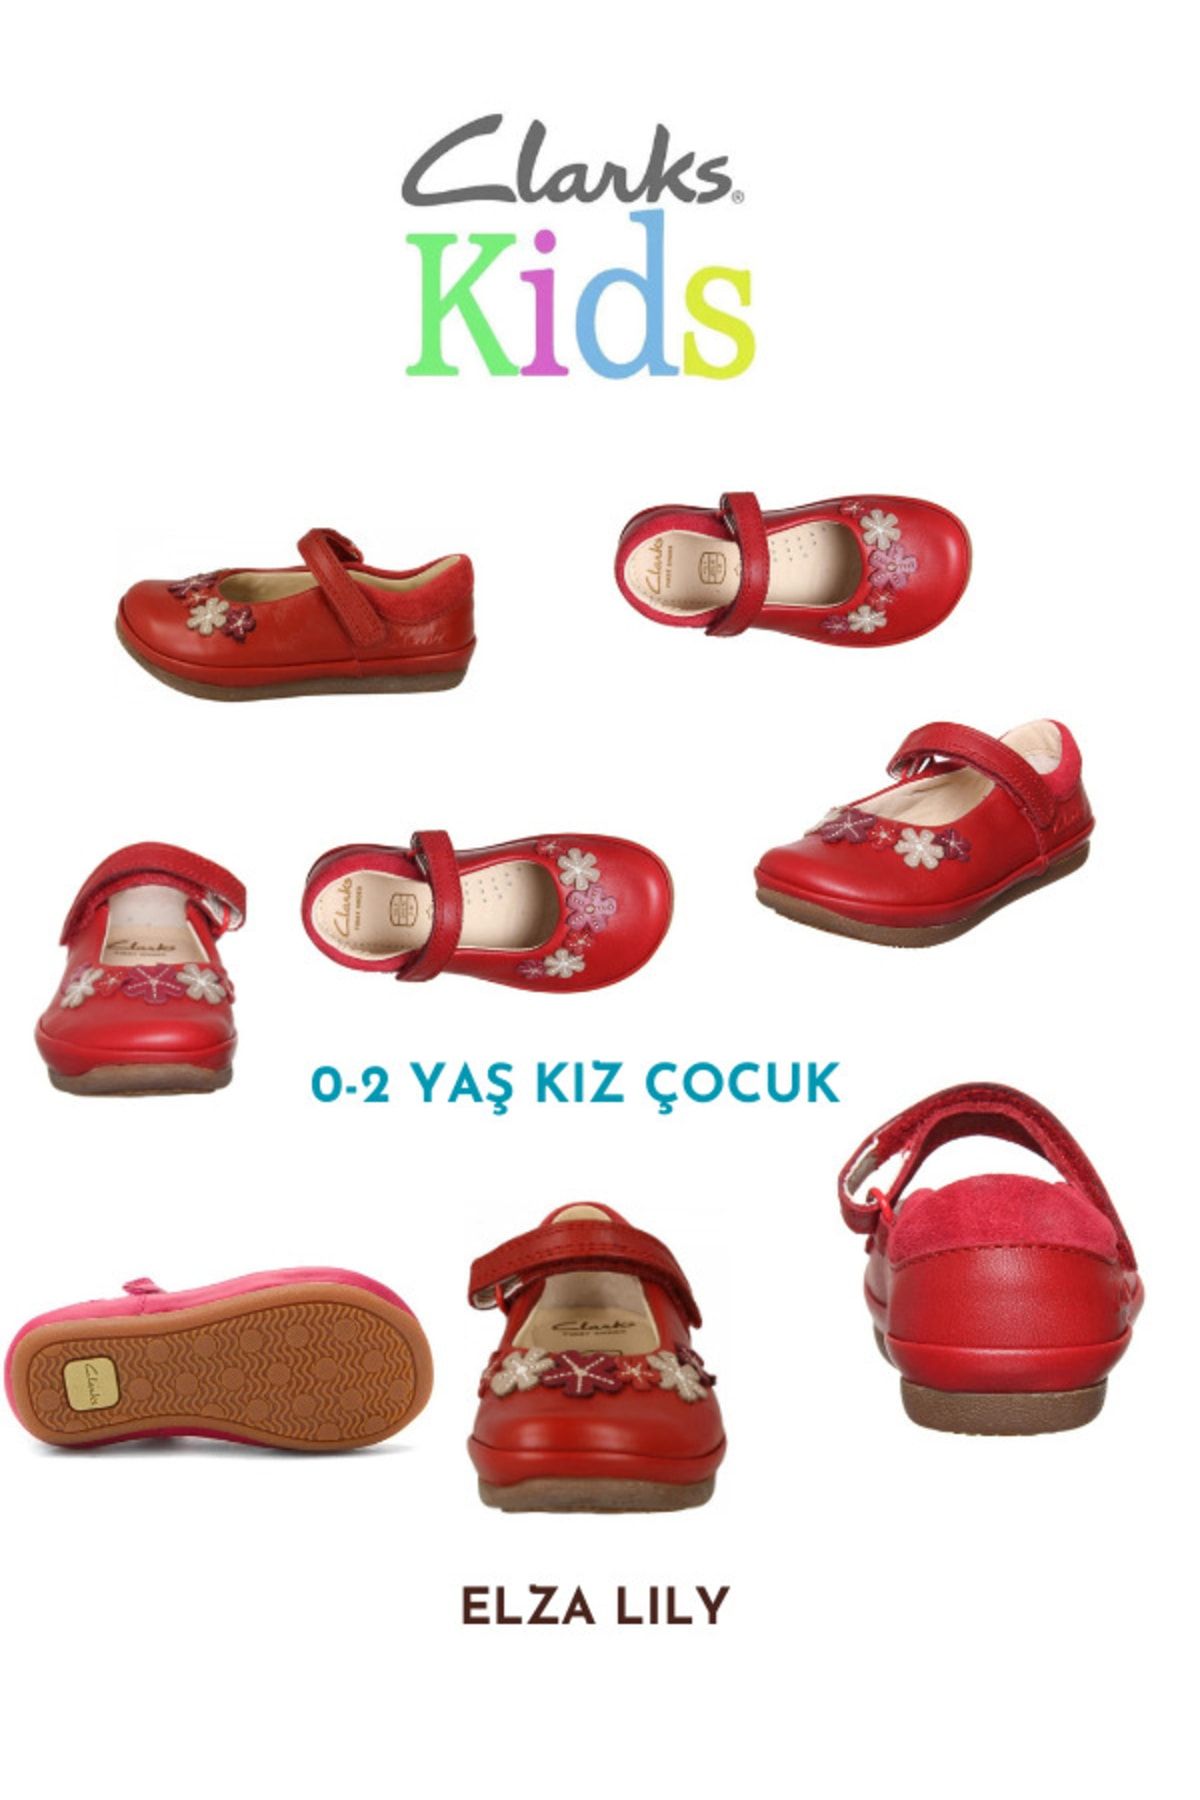 CLARKS Kız Çocuk 0-2 Yaş Ayakkabısı Yürümeye Başlayan Ilk Ürün Adı Elza Lily | 52%'YE KADAR İNDİRİM | yoglobalnetwork.com